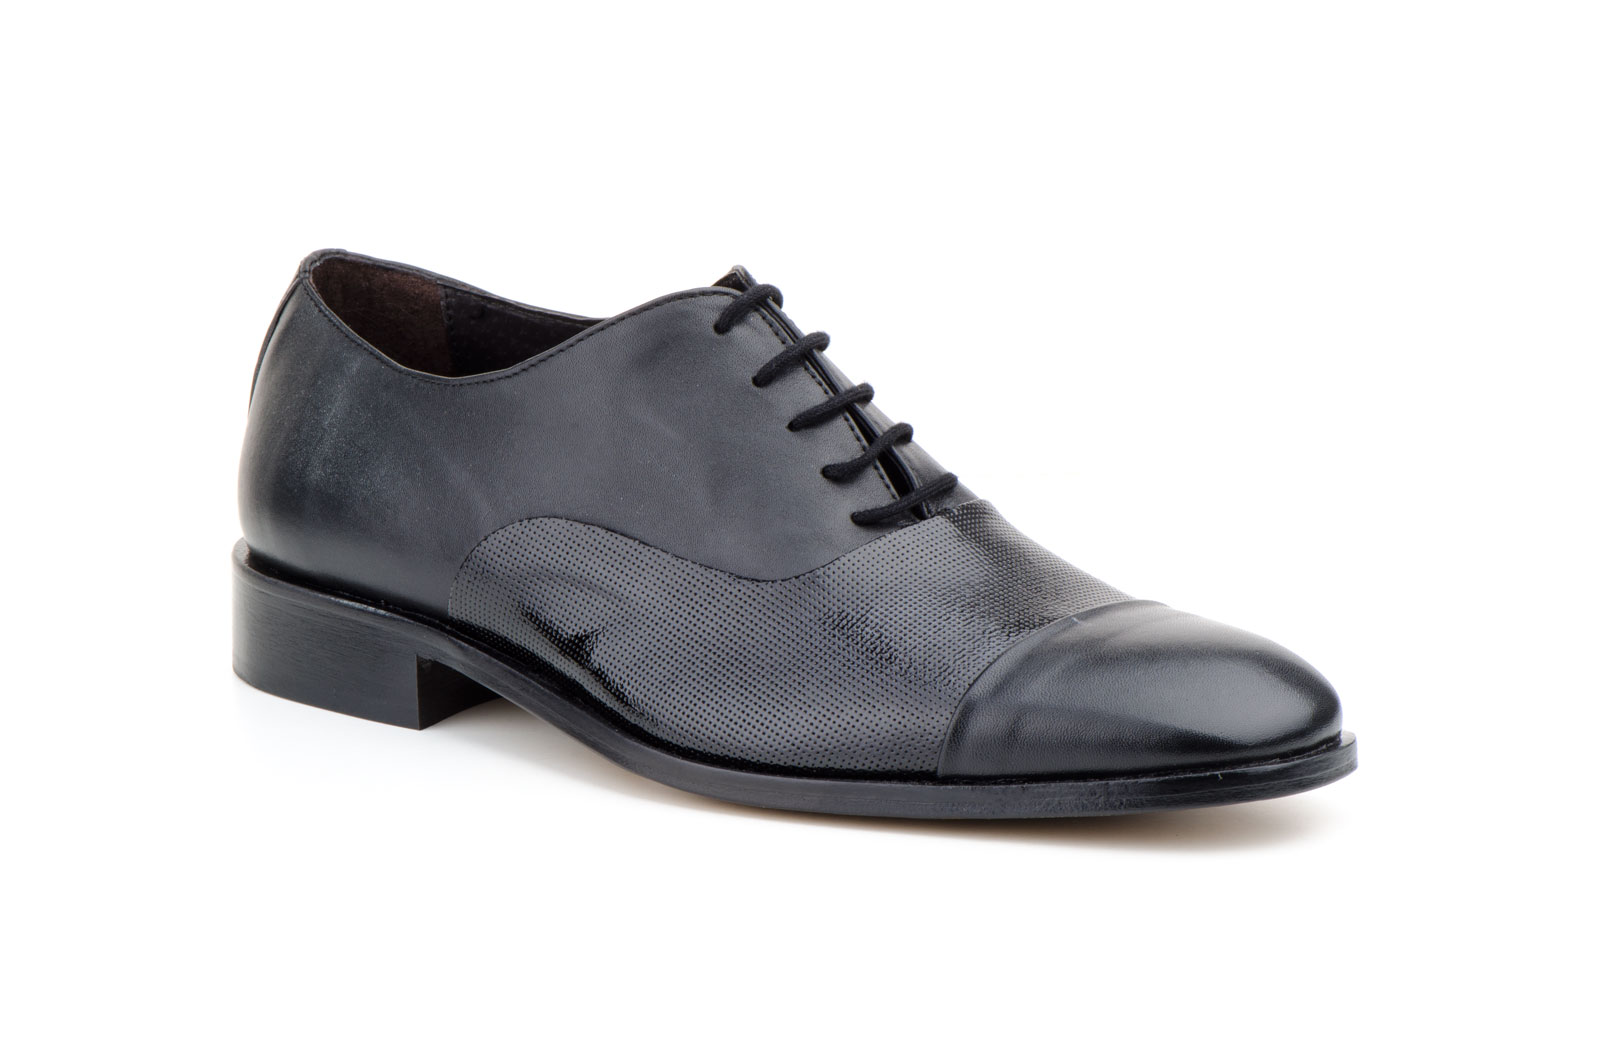 Zapatos Hombre Piel Negro Cordones Suela Cuero  -  Ref. 4004 Negro